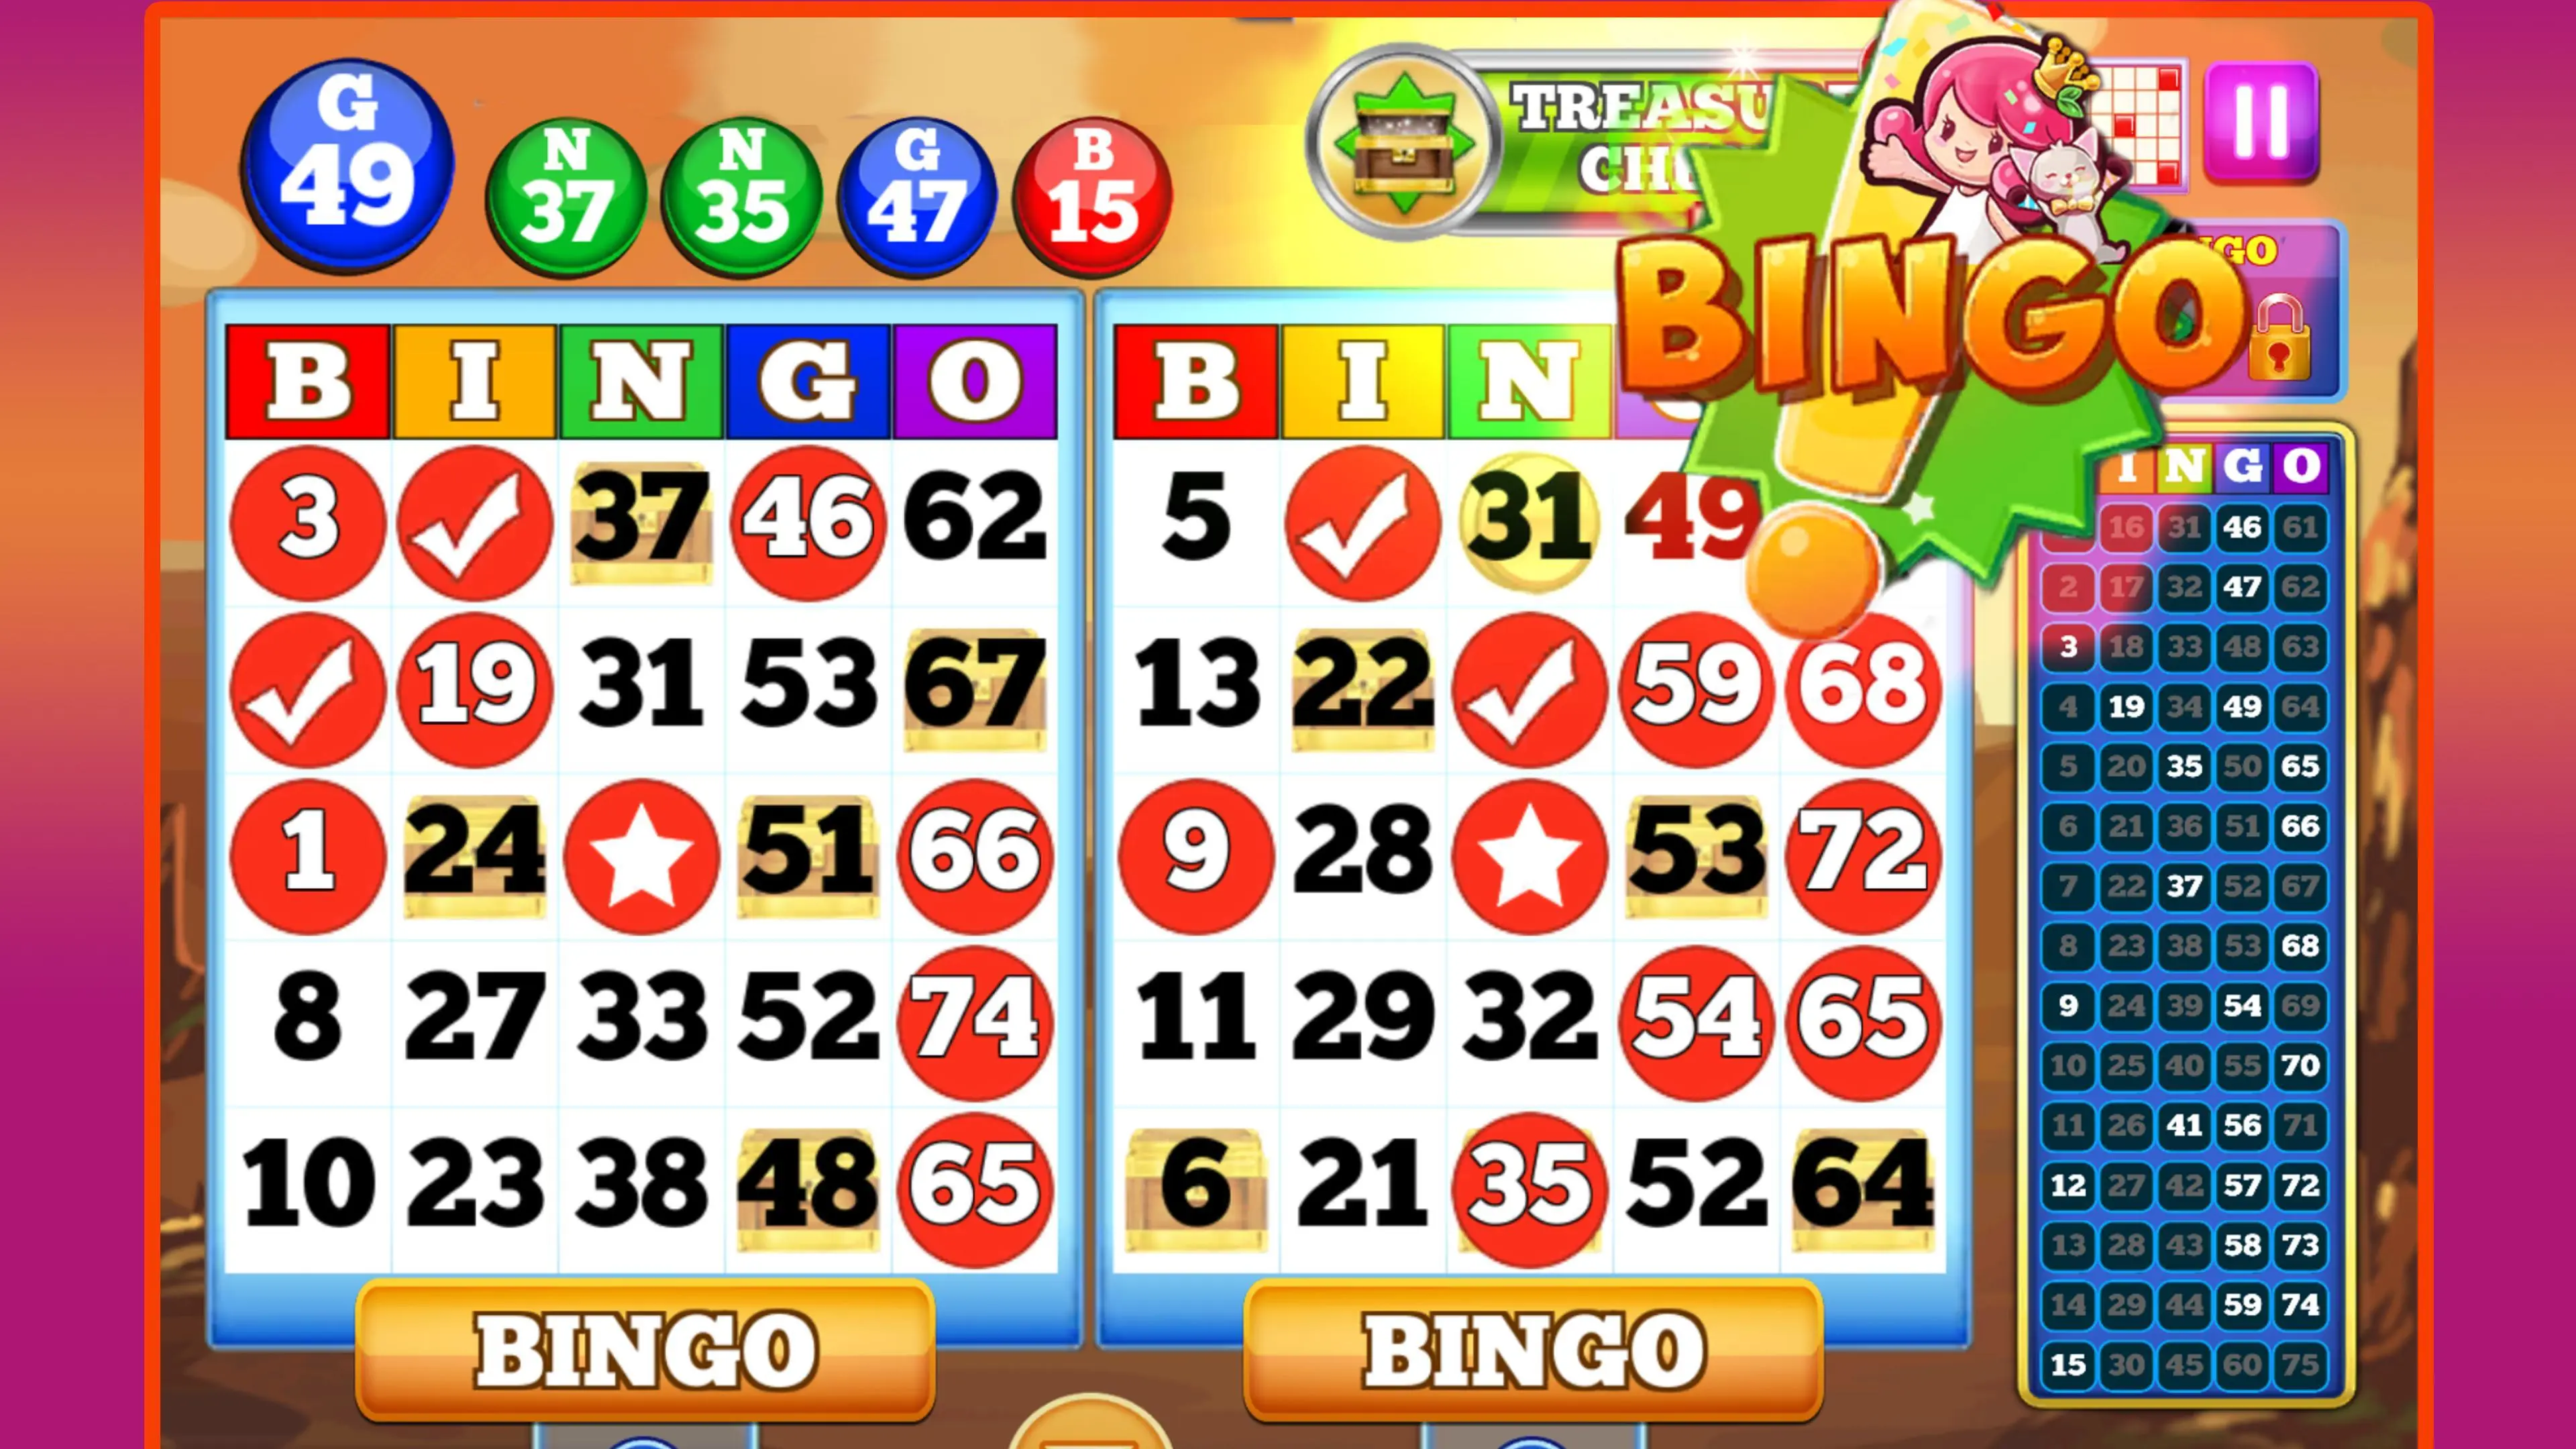 bitter defect Heer Download Bingo Games Offline: Bingo App android on PC